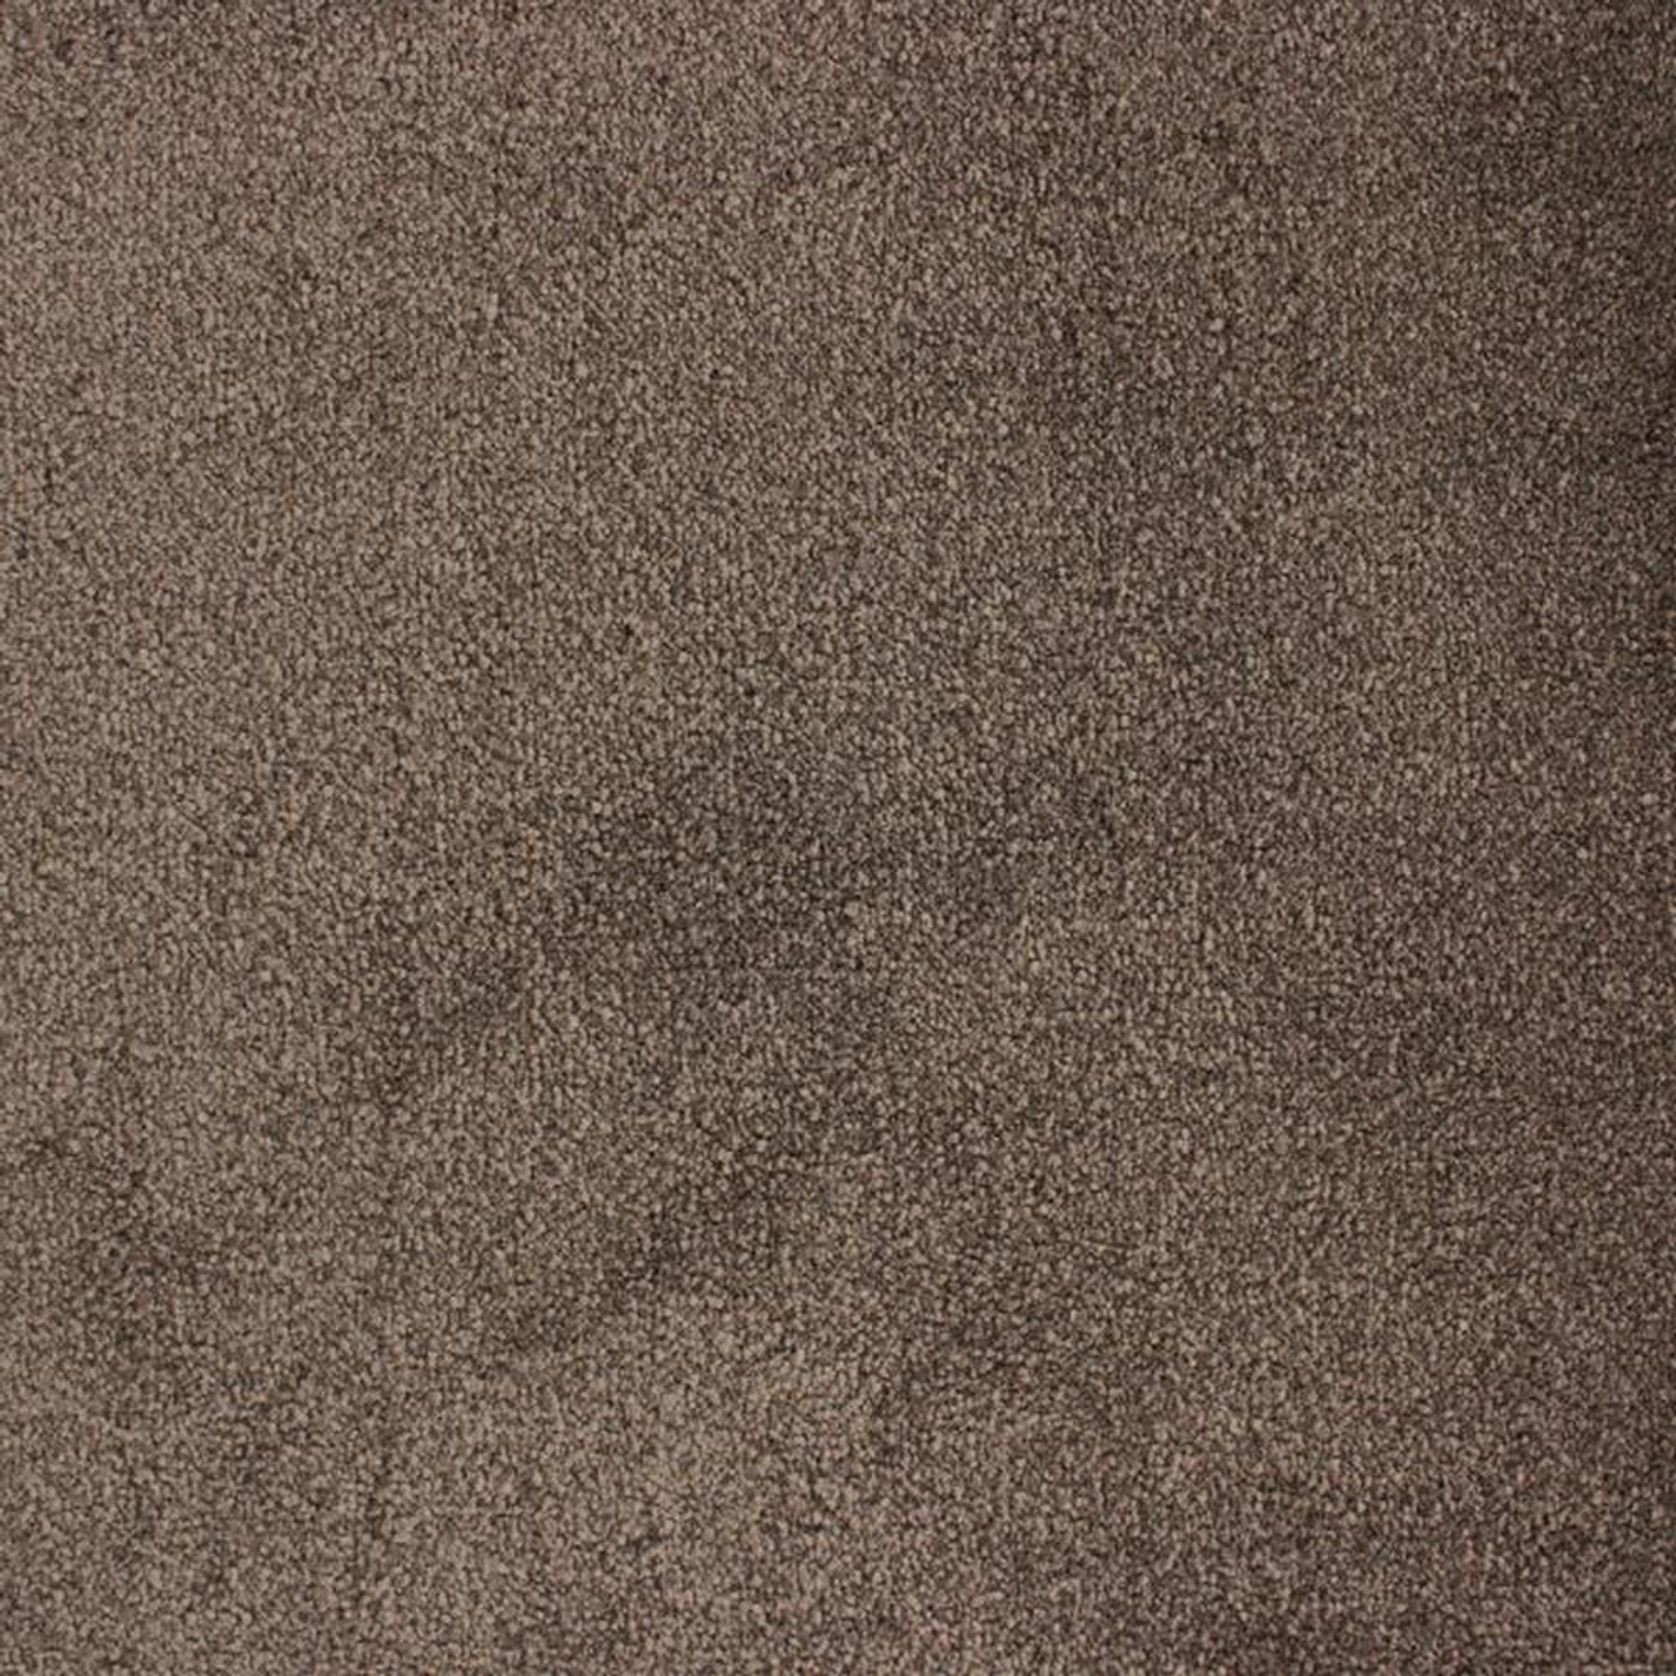 Vanity Carpet gallery detail image